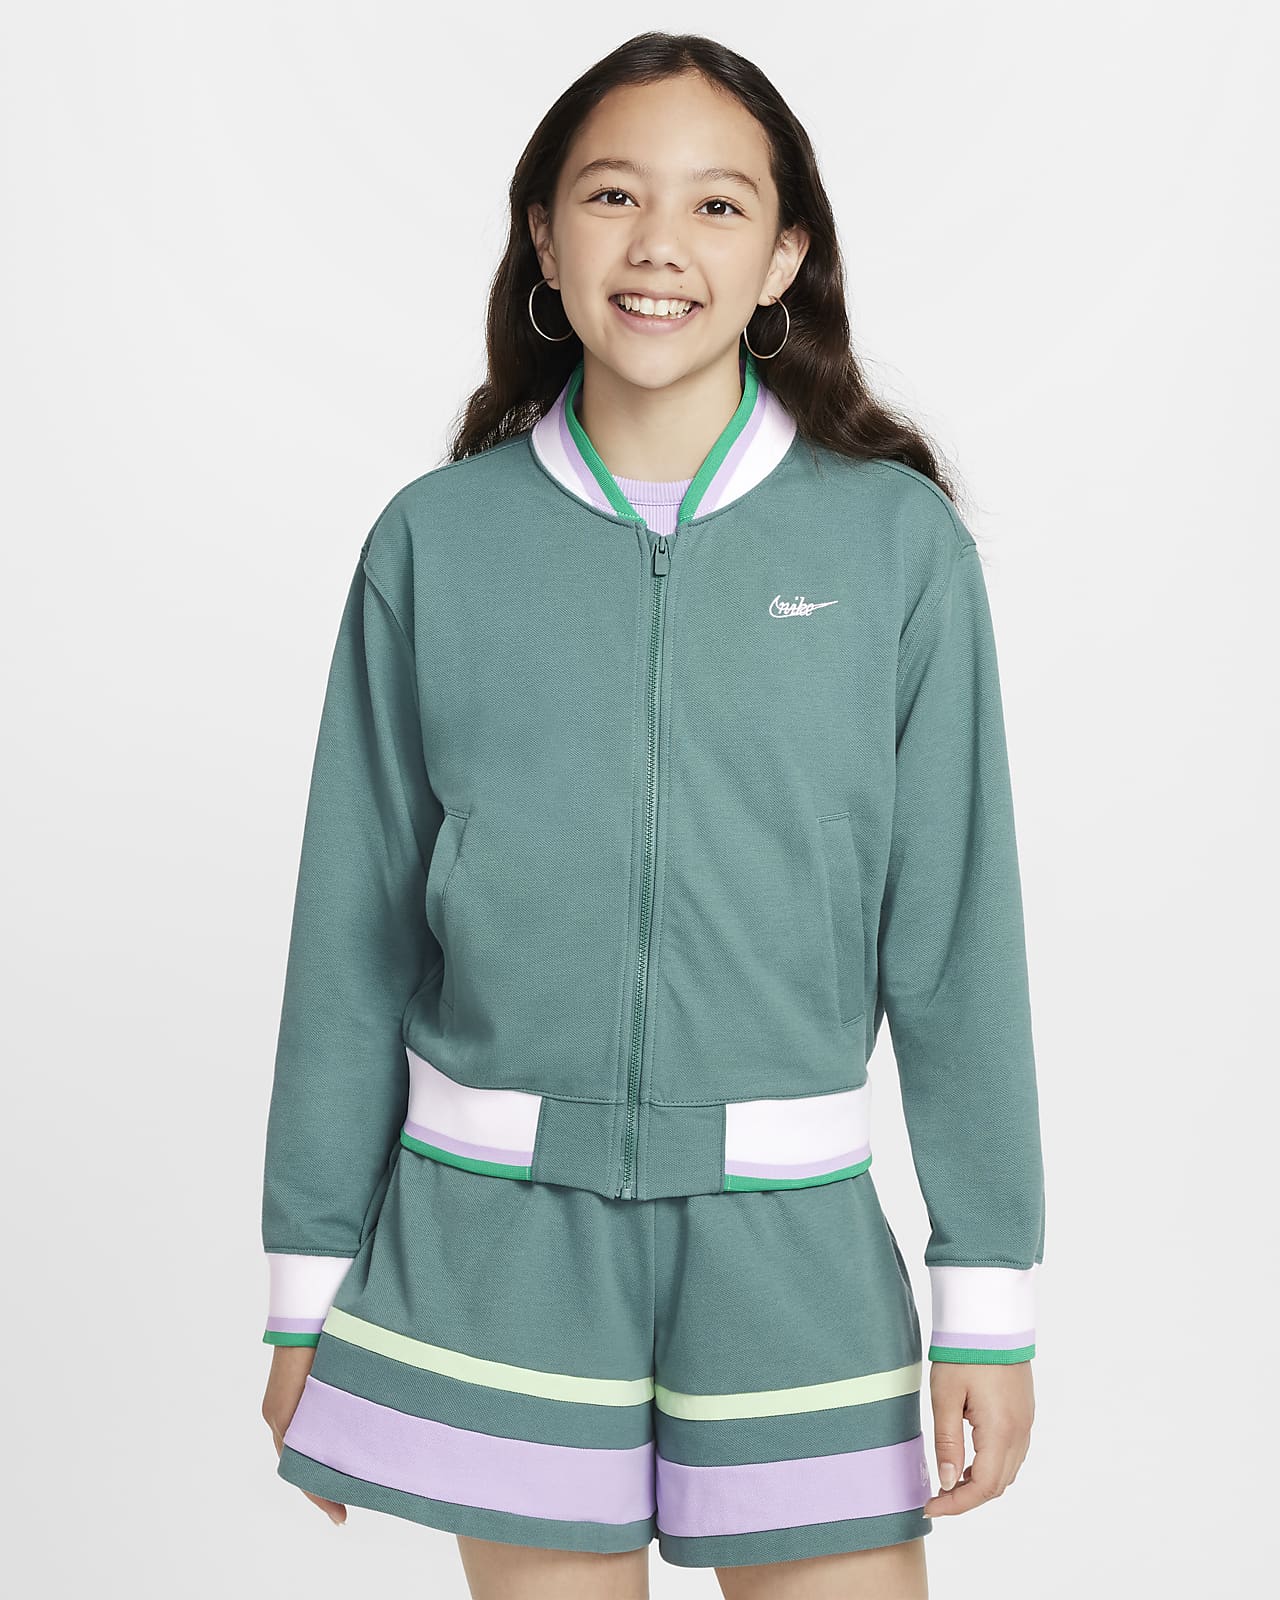 Nike Sportswear Chaqueta - Niña